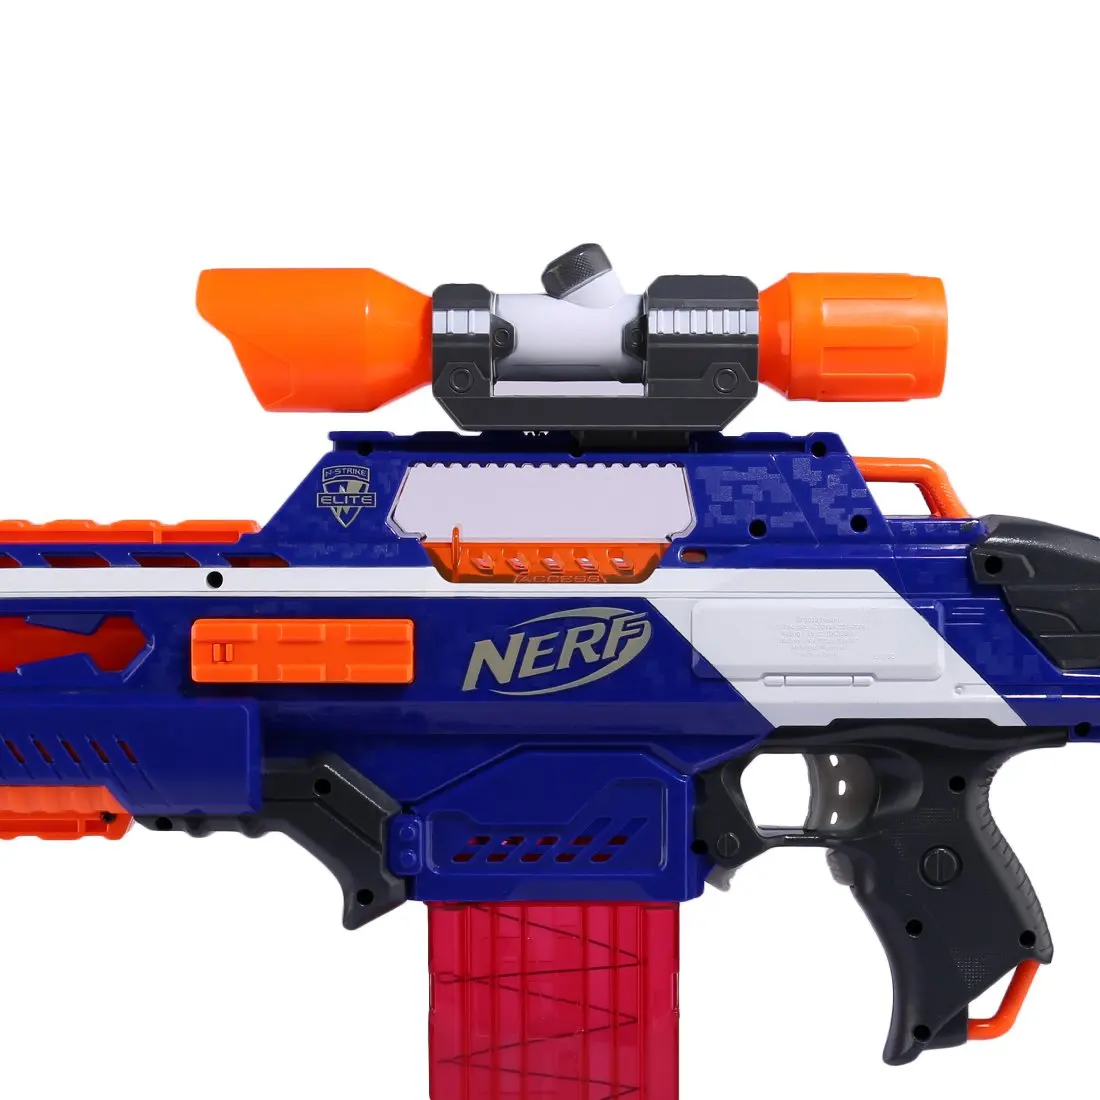 Обновленный комплект модов для Nerf с тактическим фонариком, украшение передней трубки, прицельное устройство, направляющий рельс, основной корпус для игрушечного оружия